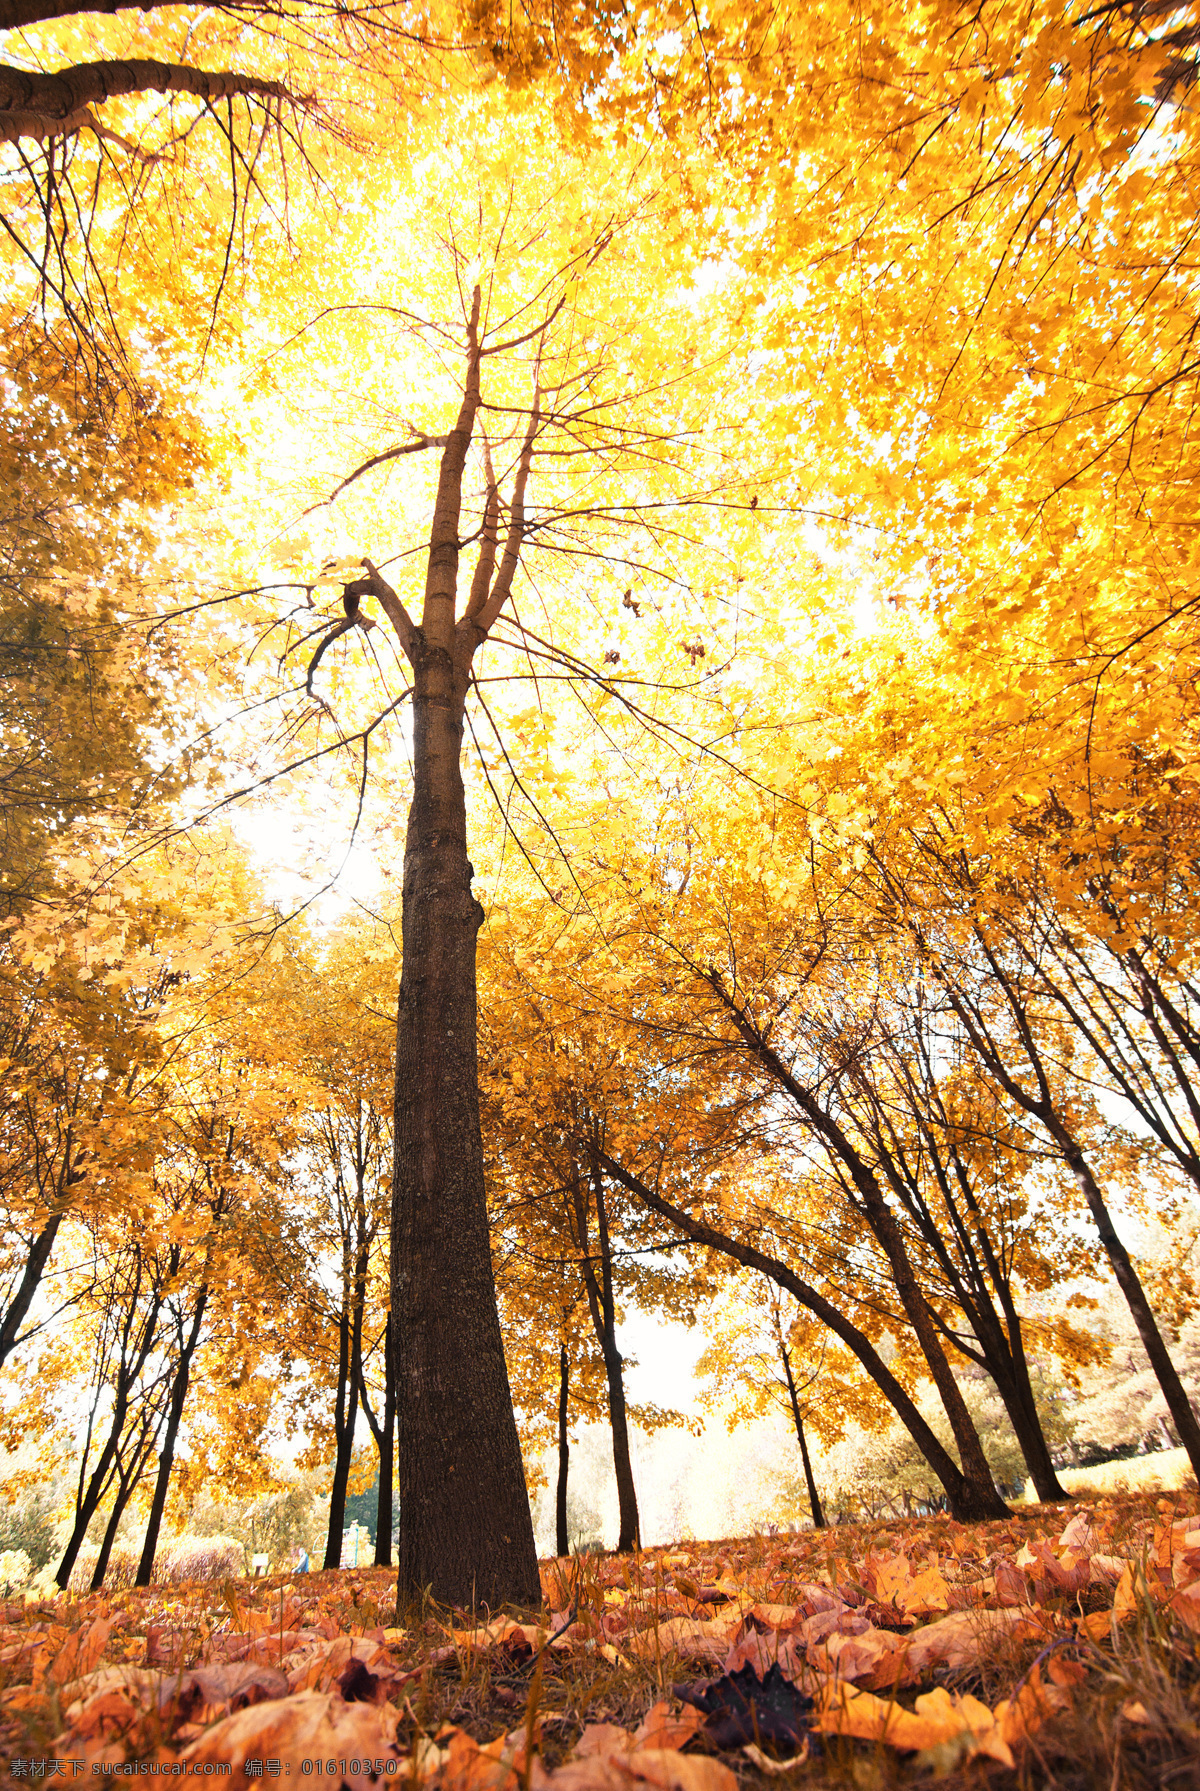 秋天 树林 风景摄影 枫 风景 枫叶 落叶 黄叶 秋天树林风景 秋季美景 美丽风景 秋季景色 自然风景 自然景观 黄色